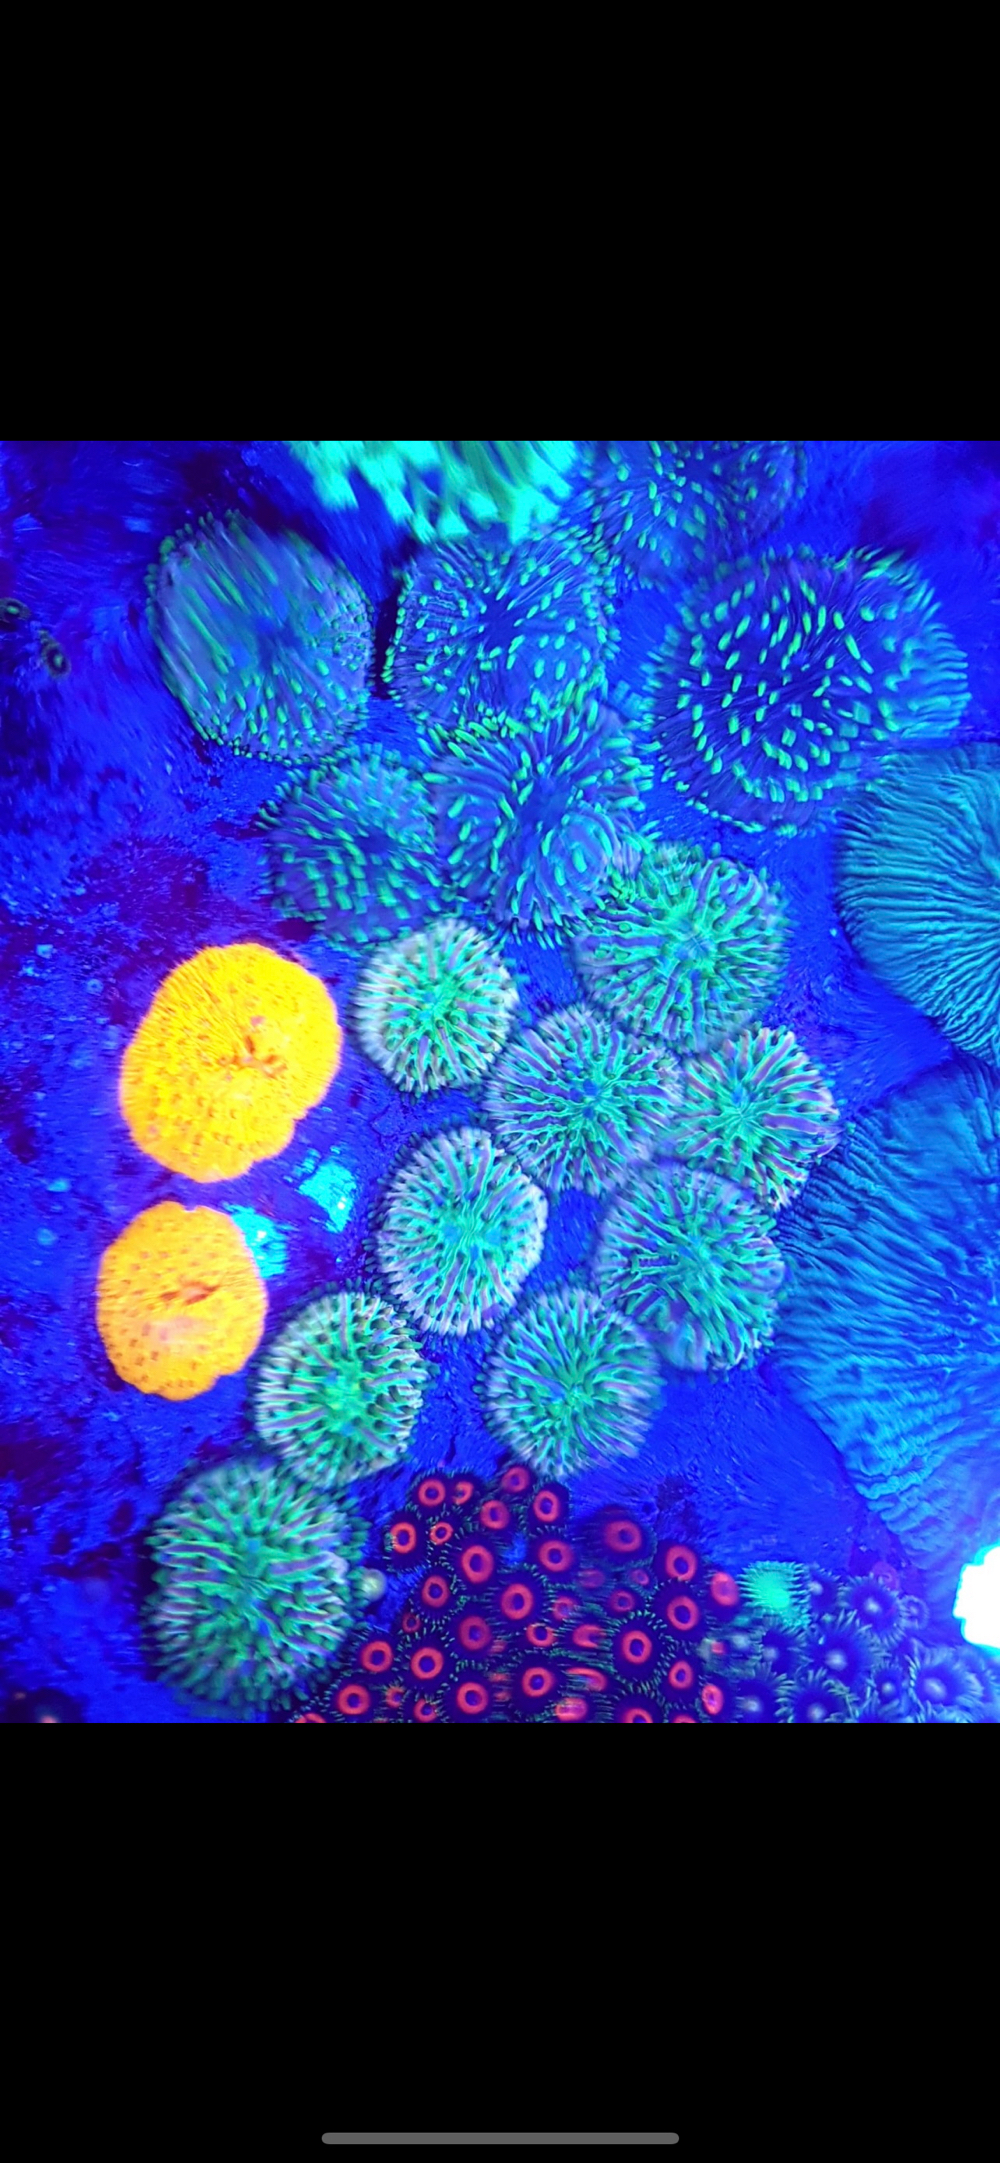 Fungias Meerwasser Korallen